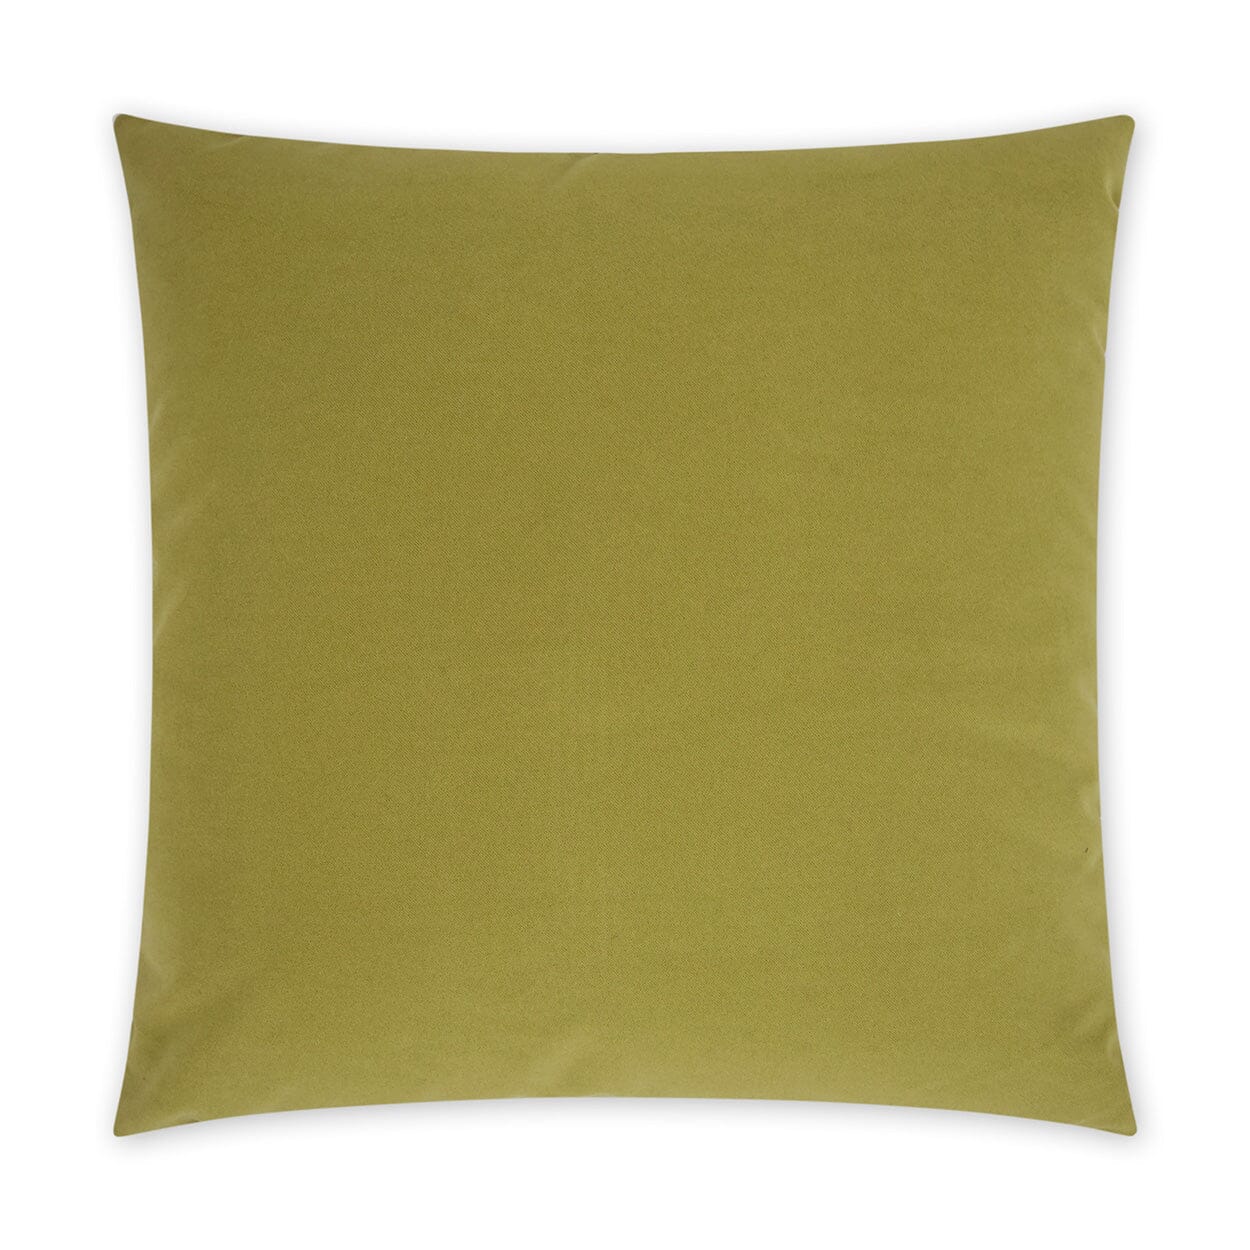 D.V. Kap 22" x 22" Outdoor Throw Pillow | Sundance Leaf Pillows D.V Kap Outdoor